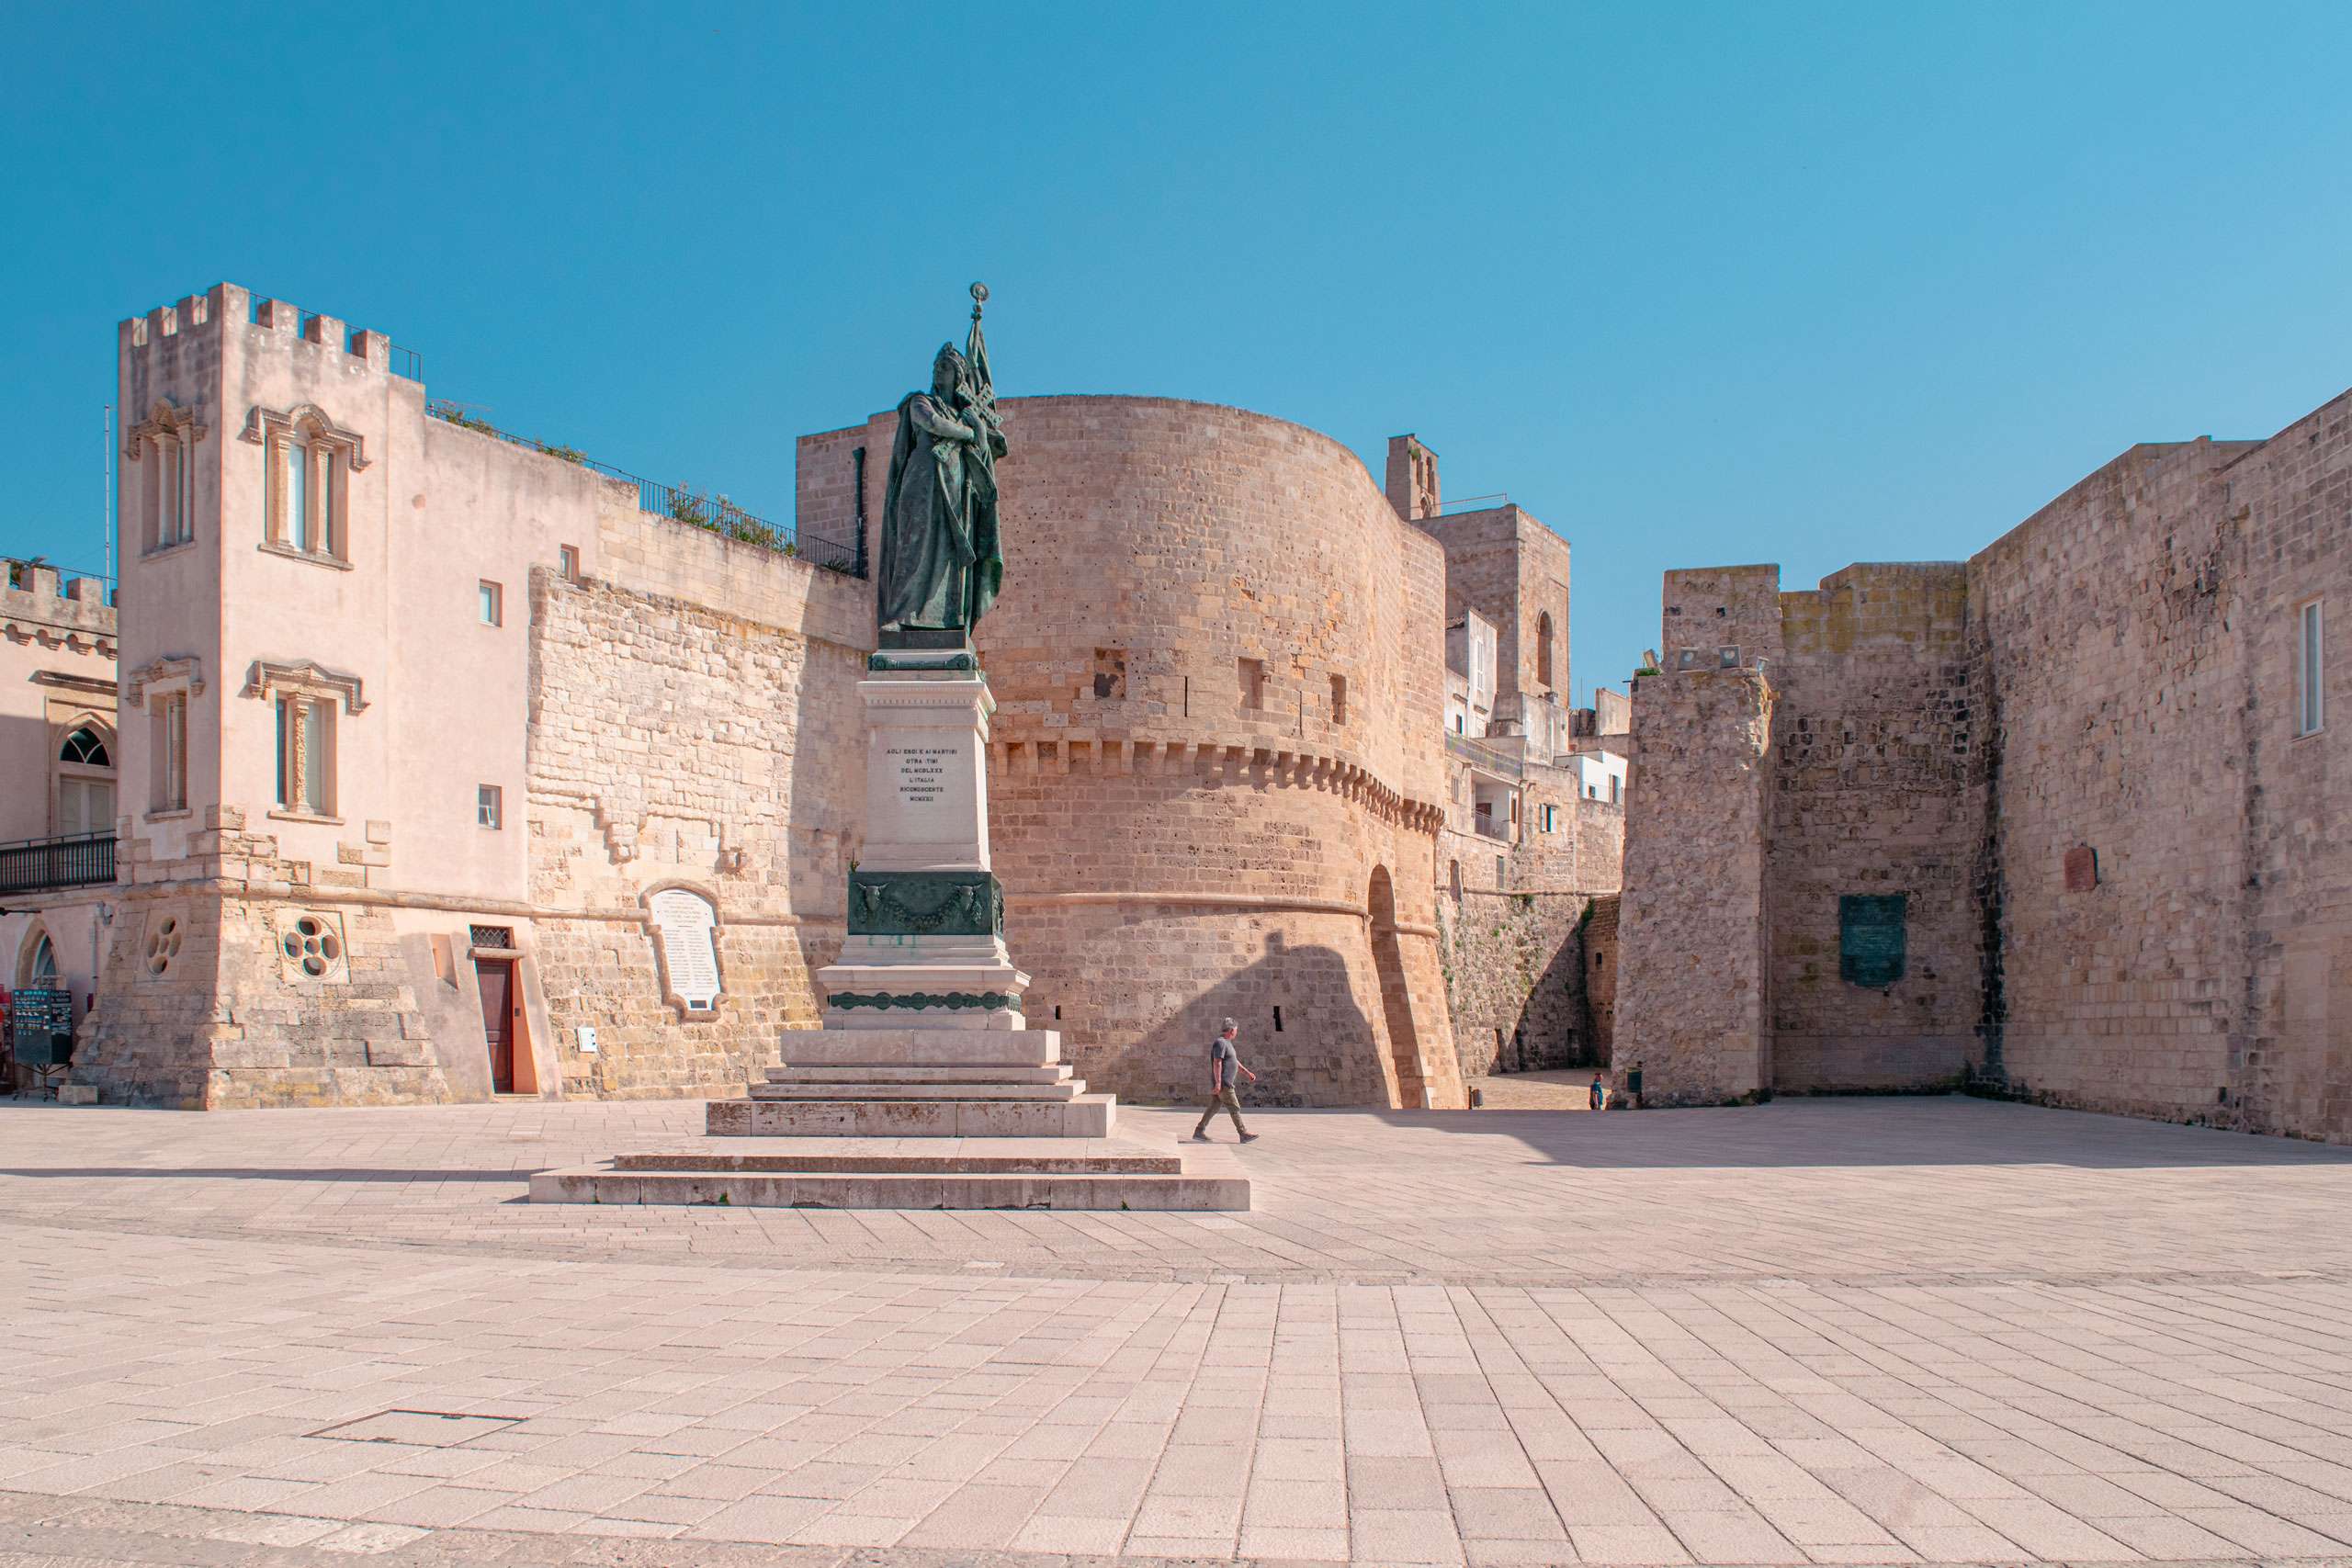 Otranto Castle - stop-over of Road Trip in Salento